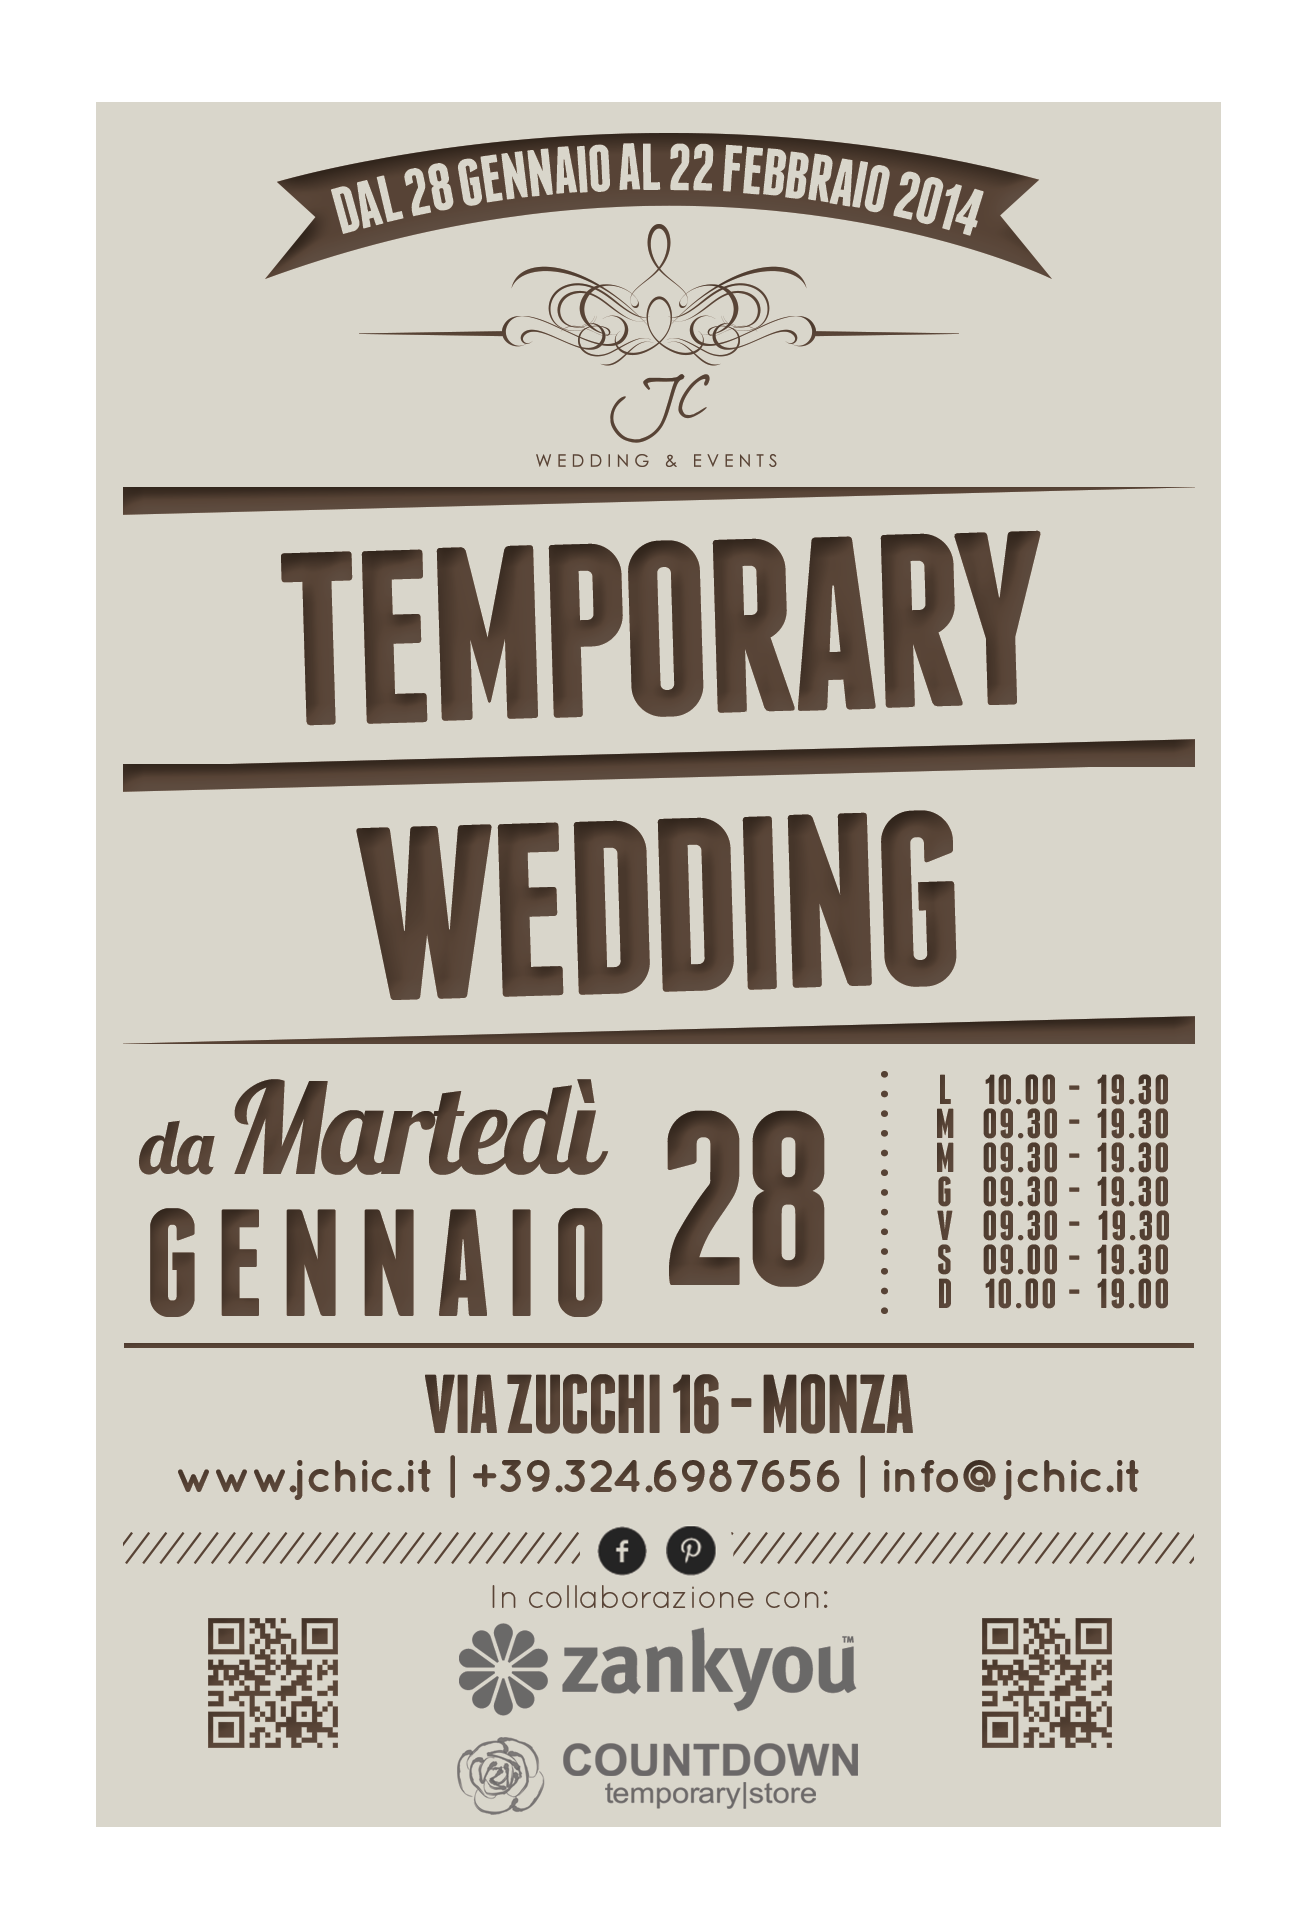 JChic Wedding & Events Temporary Wedding gennaio 2014